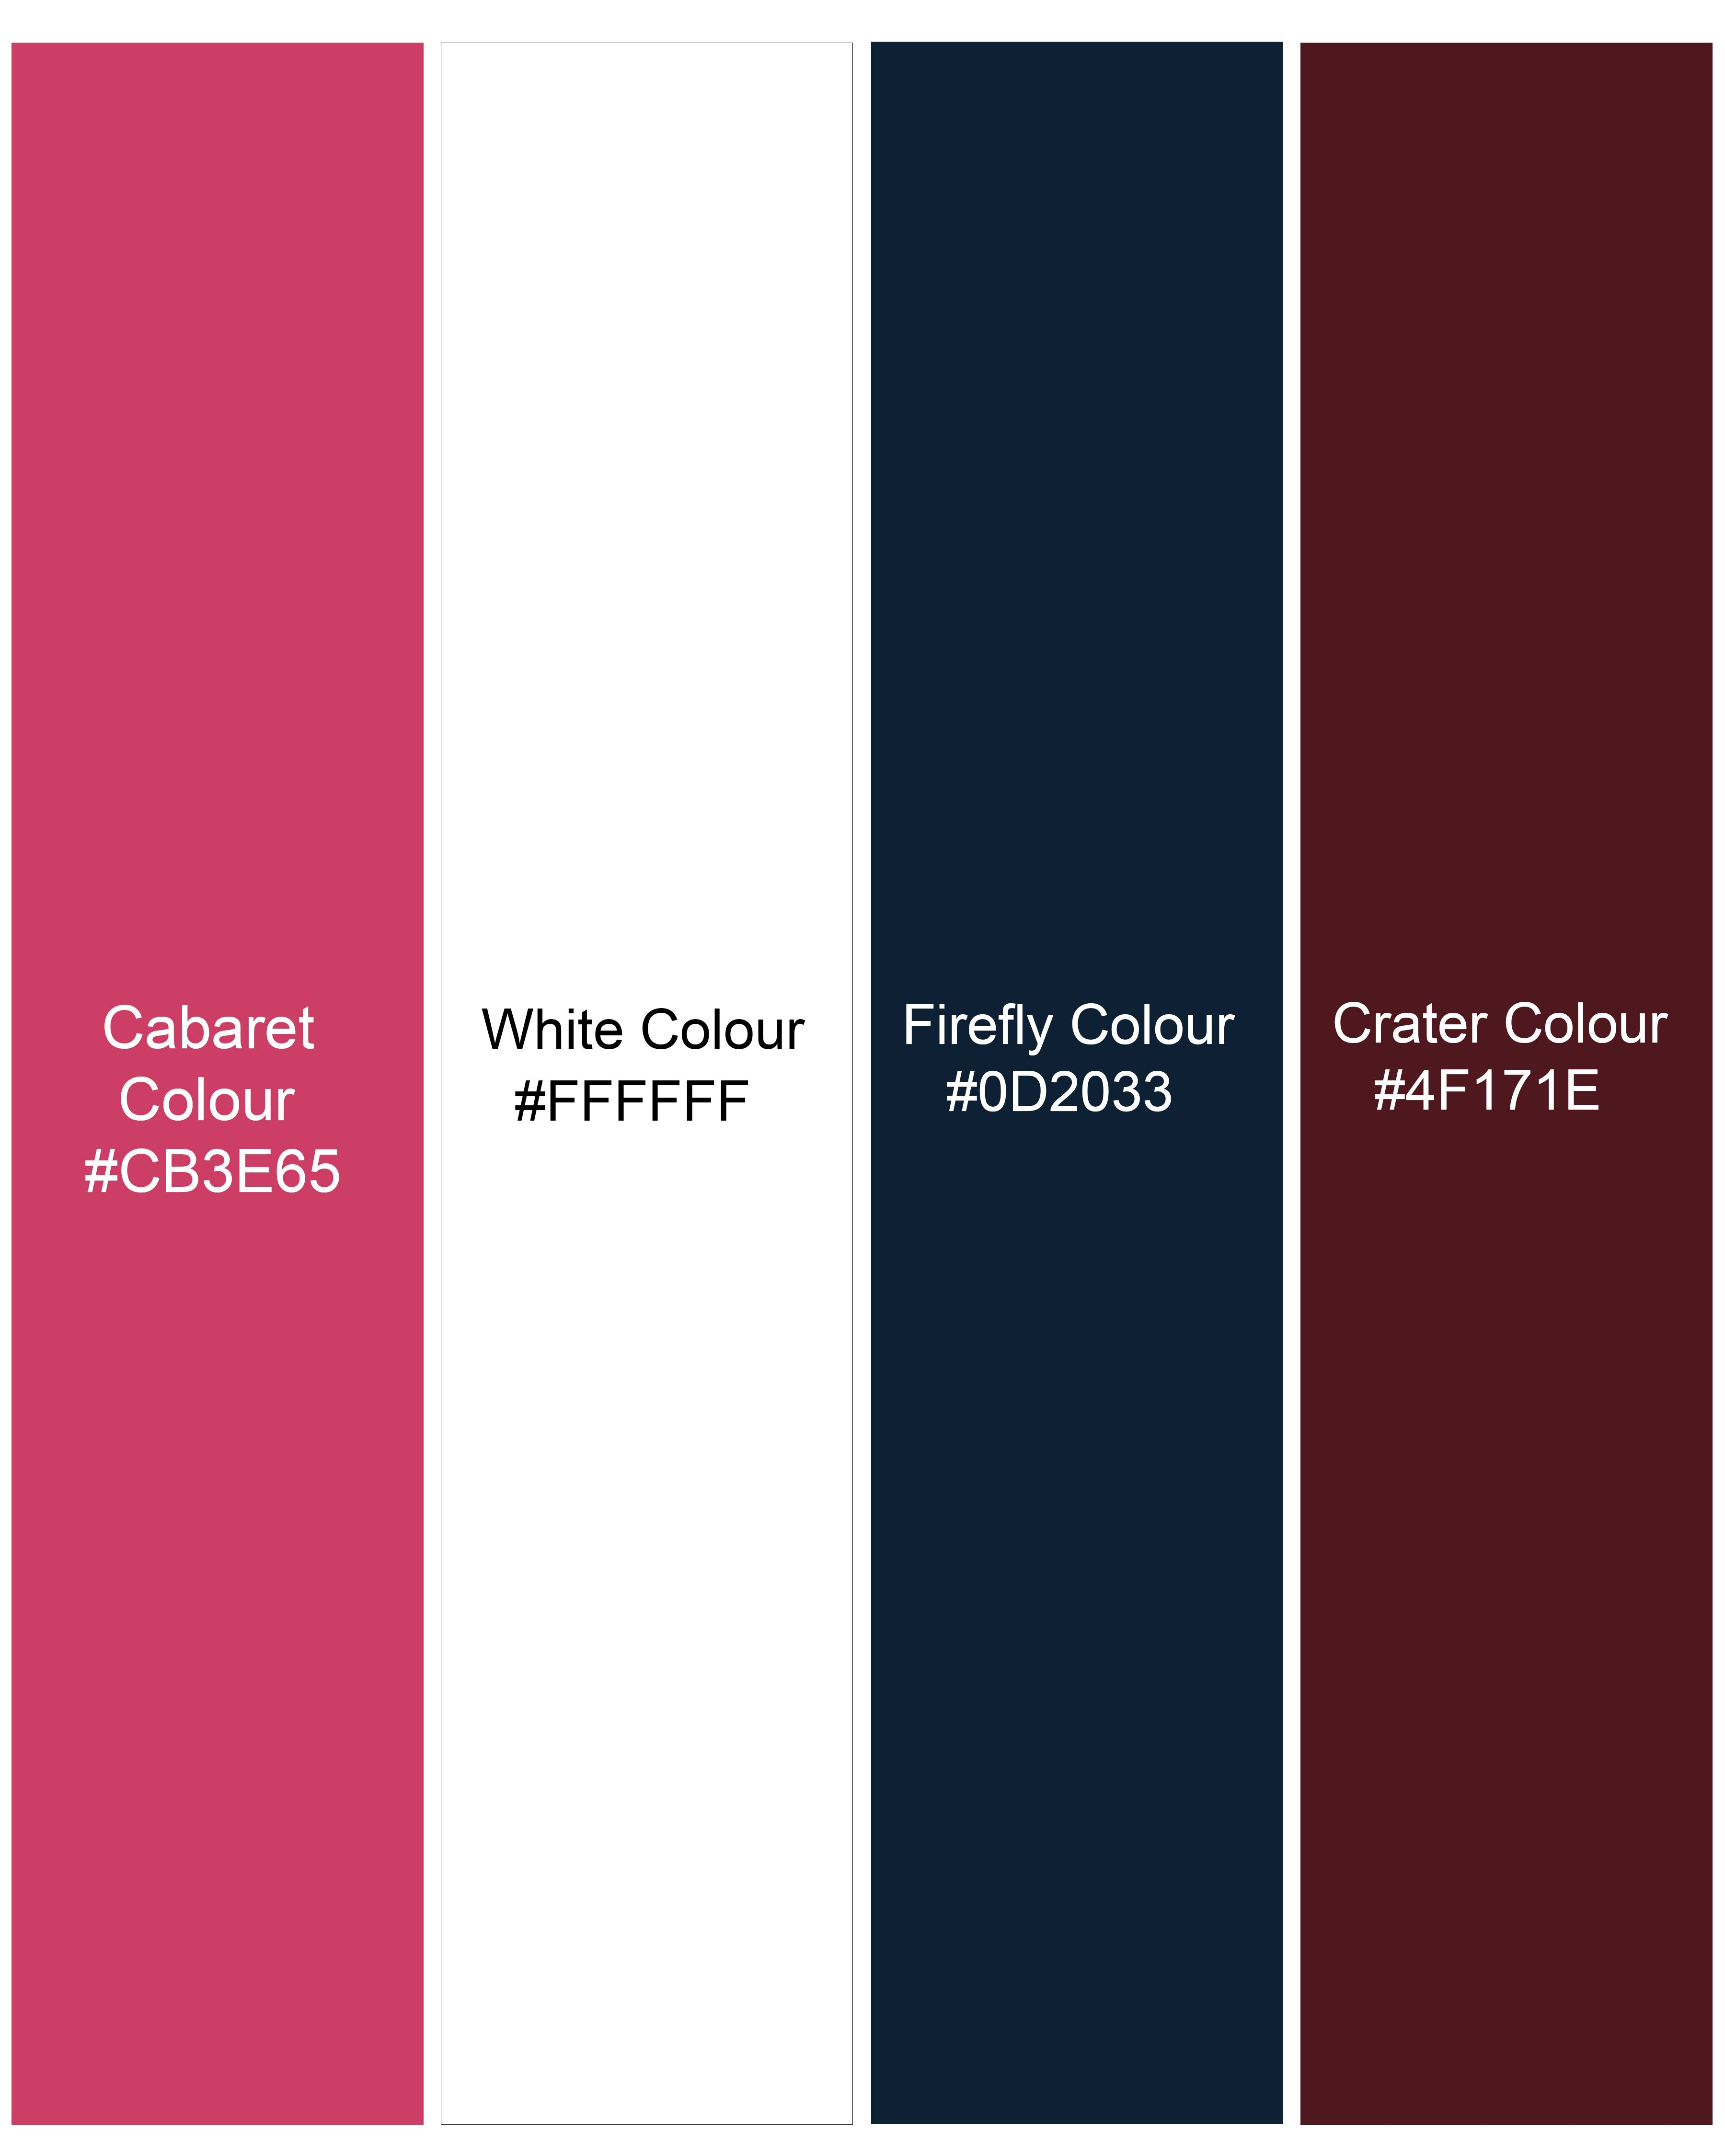 Cabaret Pink with Crater Maroon Multicolour Striped Premium Cotton Designer Shirt 9167-P247-38,9167-P247-H-38,9167-P247-39,9167-P247-H-39,9167-P247-40,9167-P247-H-40,9167-P247-42,9167-P247-H-42,9167-P247-44,9167-P247-H-44,9167-P247-46,9167-P247-H-46,9167-P247-48,9167-P247-H-48,9167-P247-50,9167-P247-H-50,9167-P247-52,9167-P247-H-52